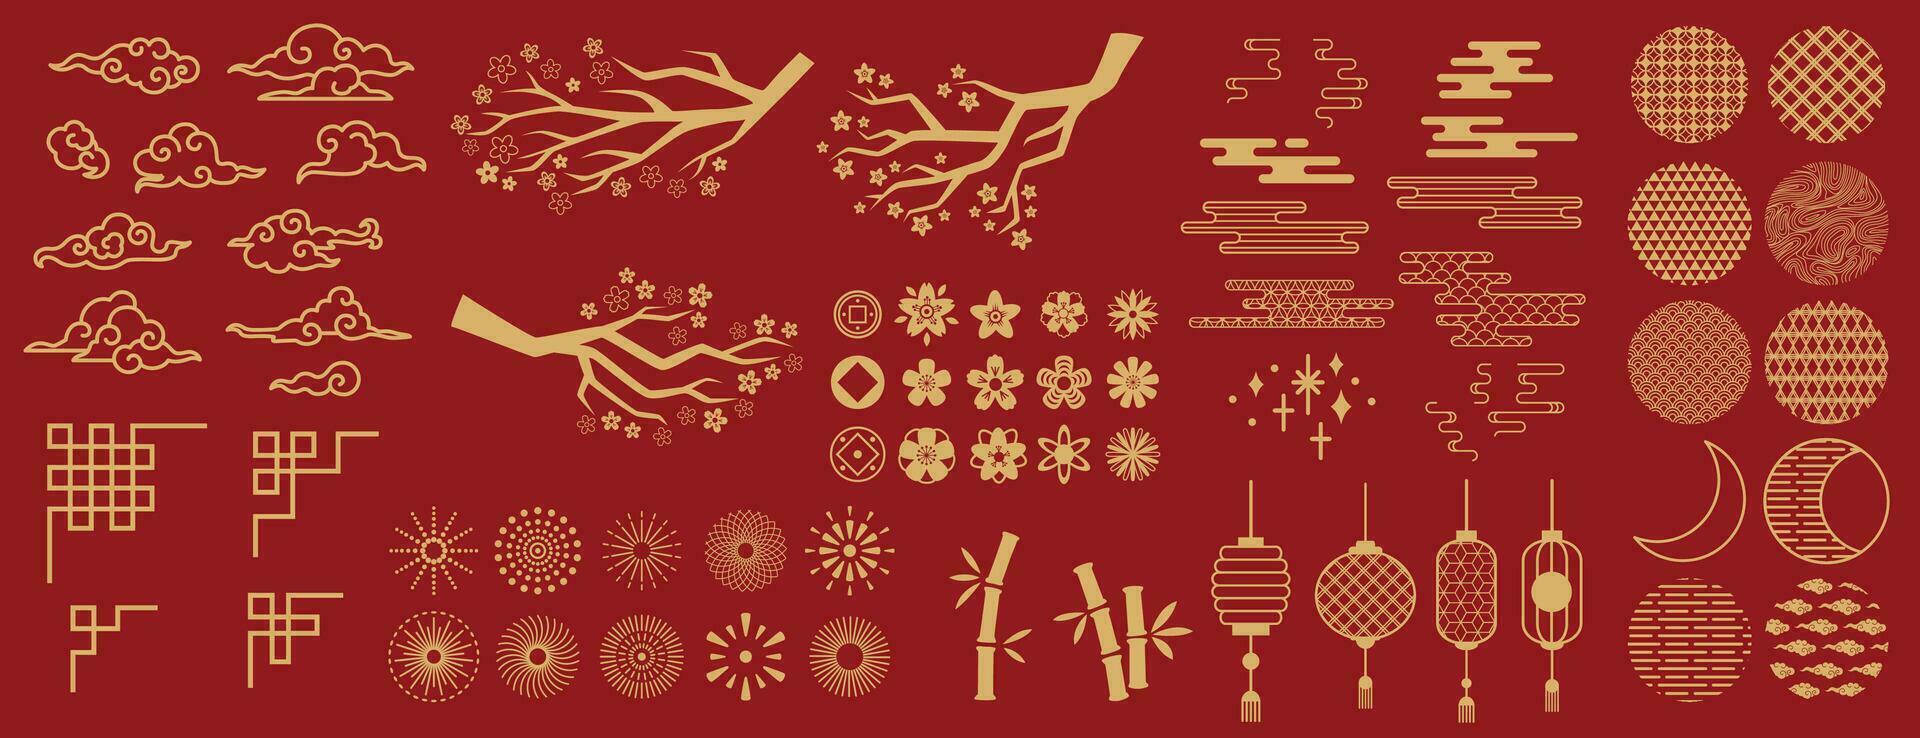 Azië elementen. Chinese feestelijk decor goud bloemen patronen en ornament, lantaarns, wolken en maan, bloemen sakura Afdeling oosters vector reeks